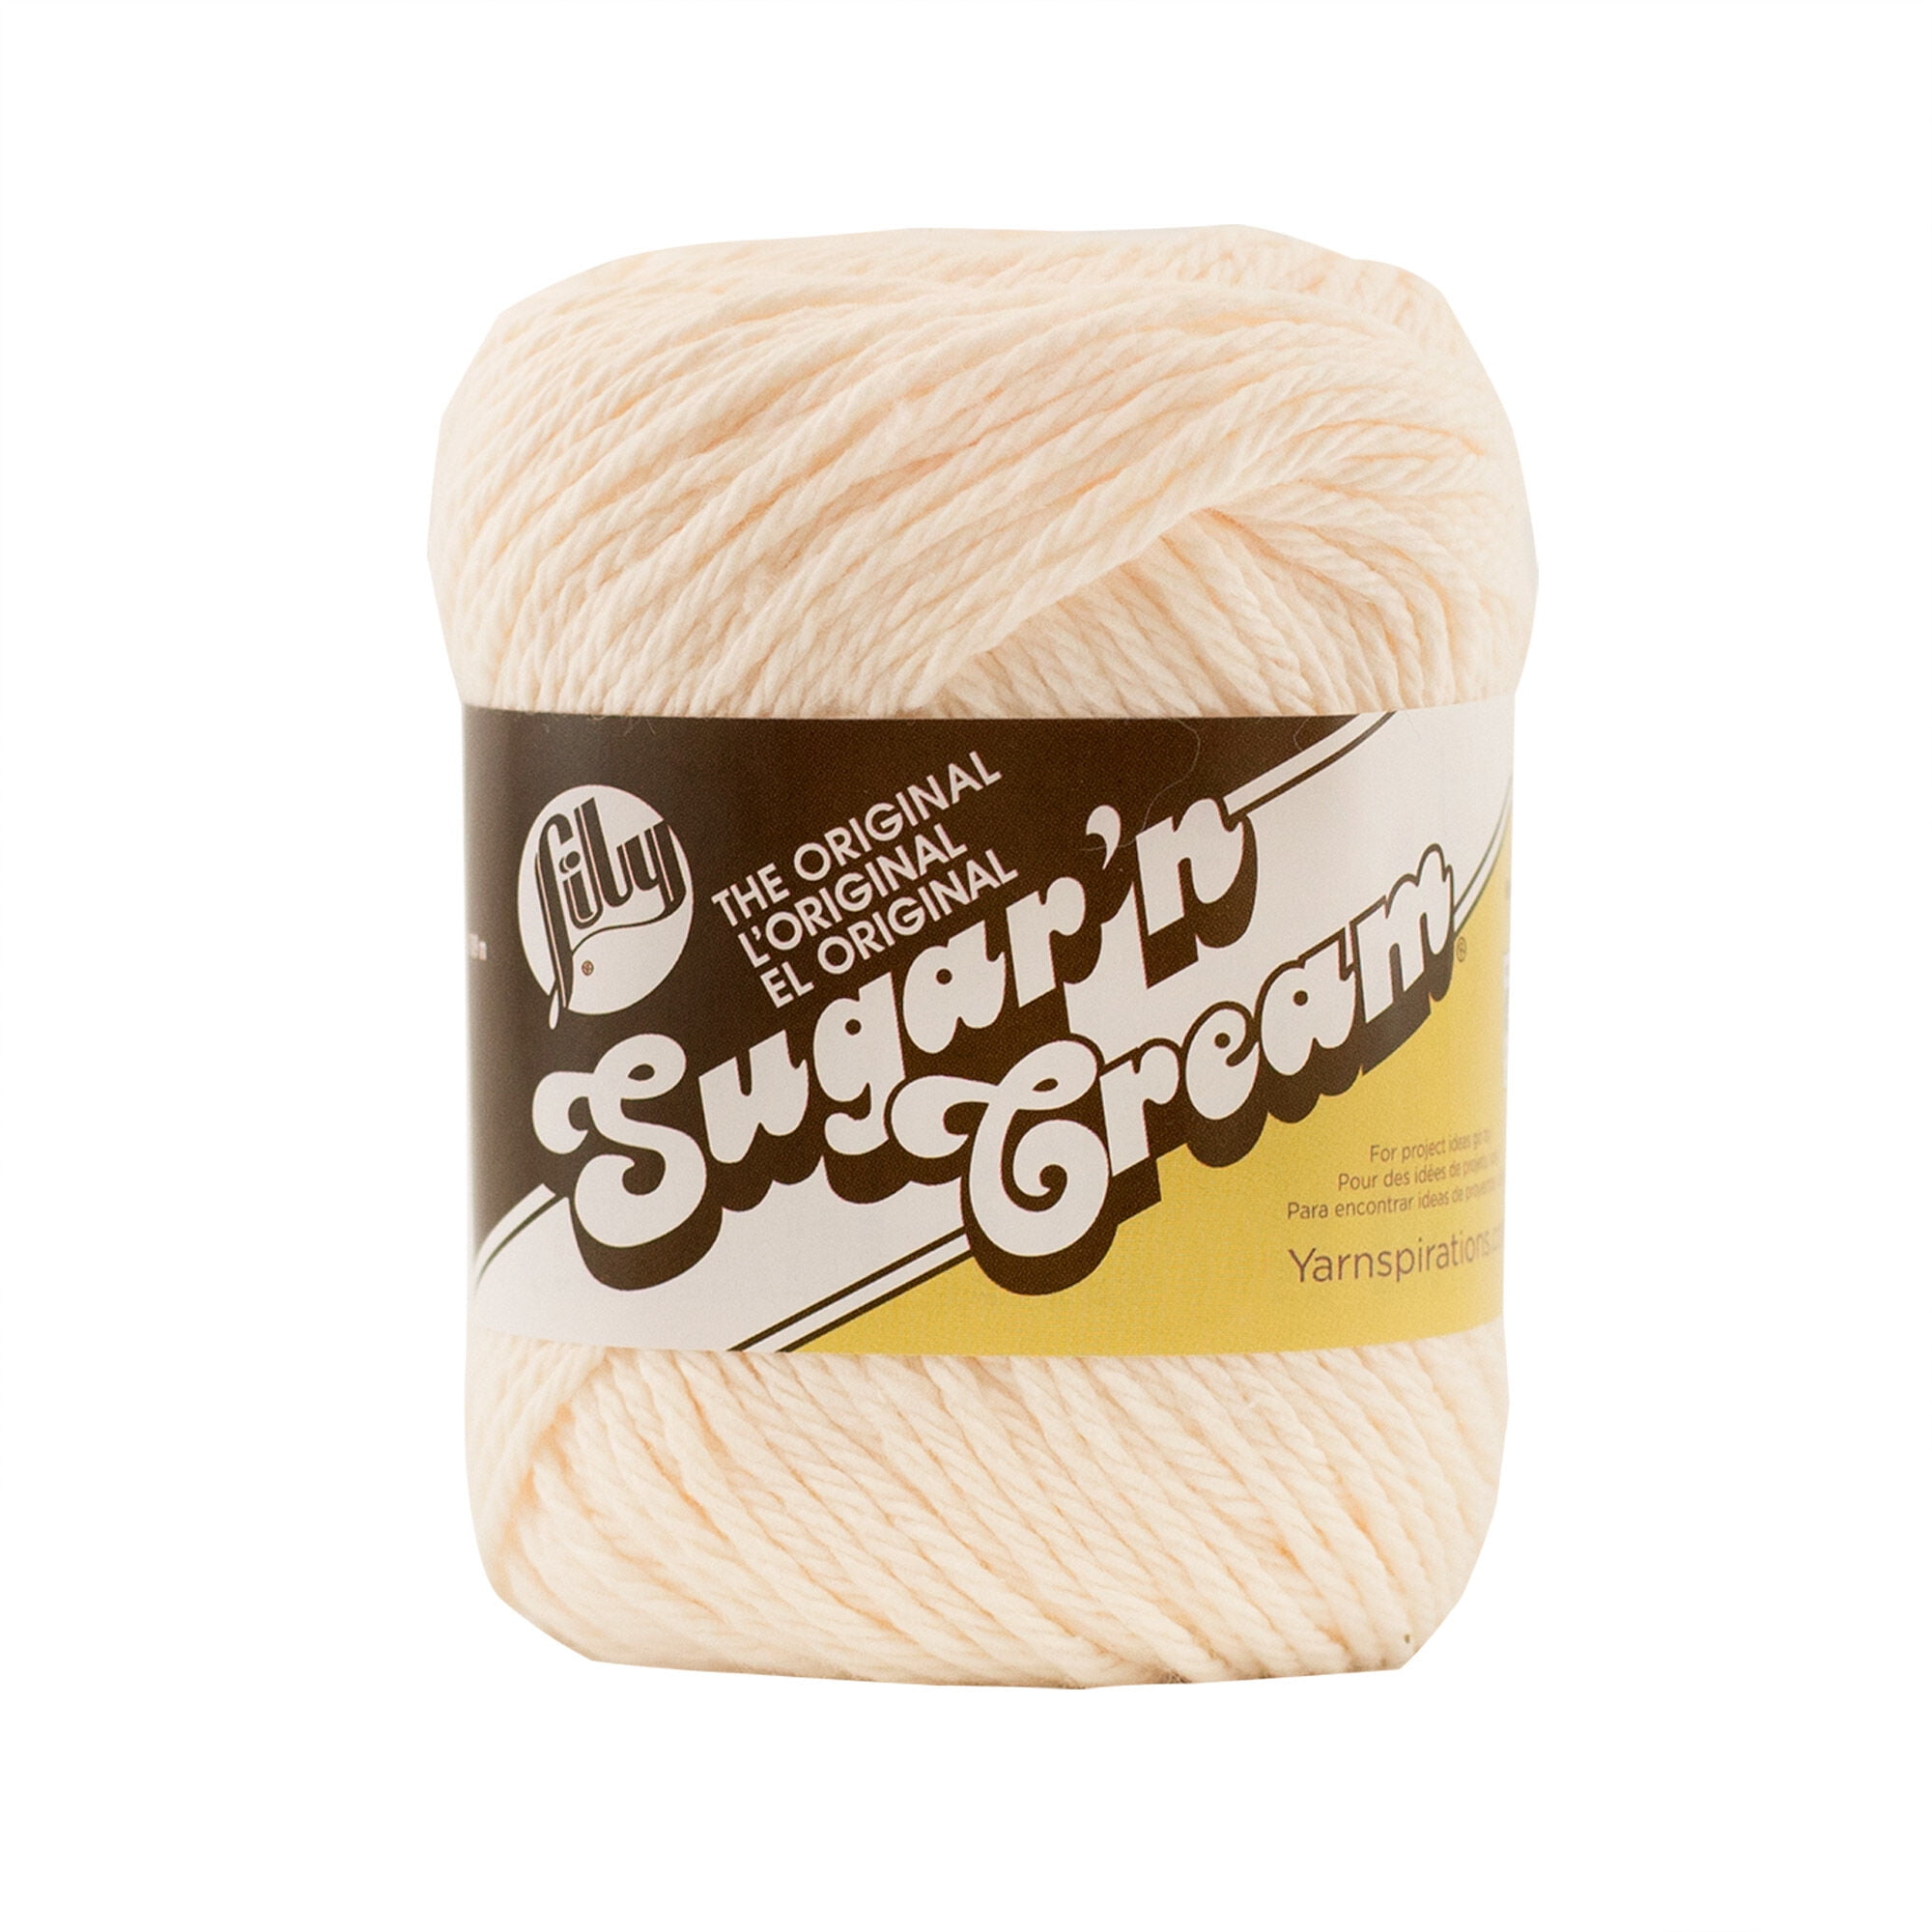 Handwork - Yarn - Sugar'n Cream Cotton Yarn - A Child's Dream